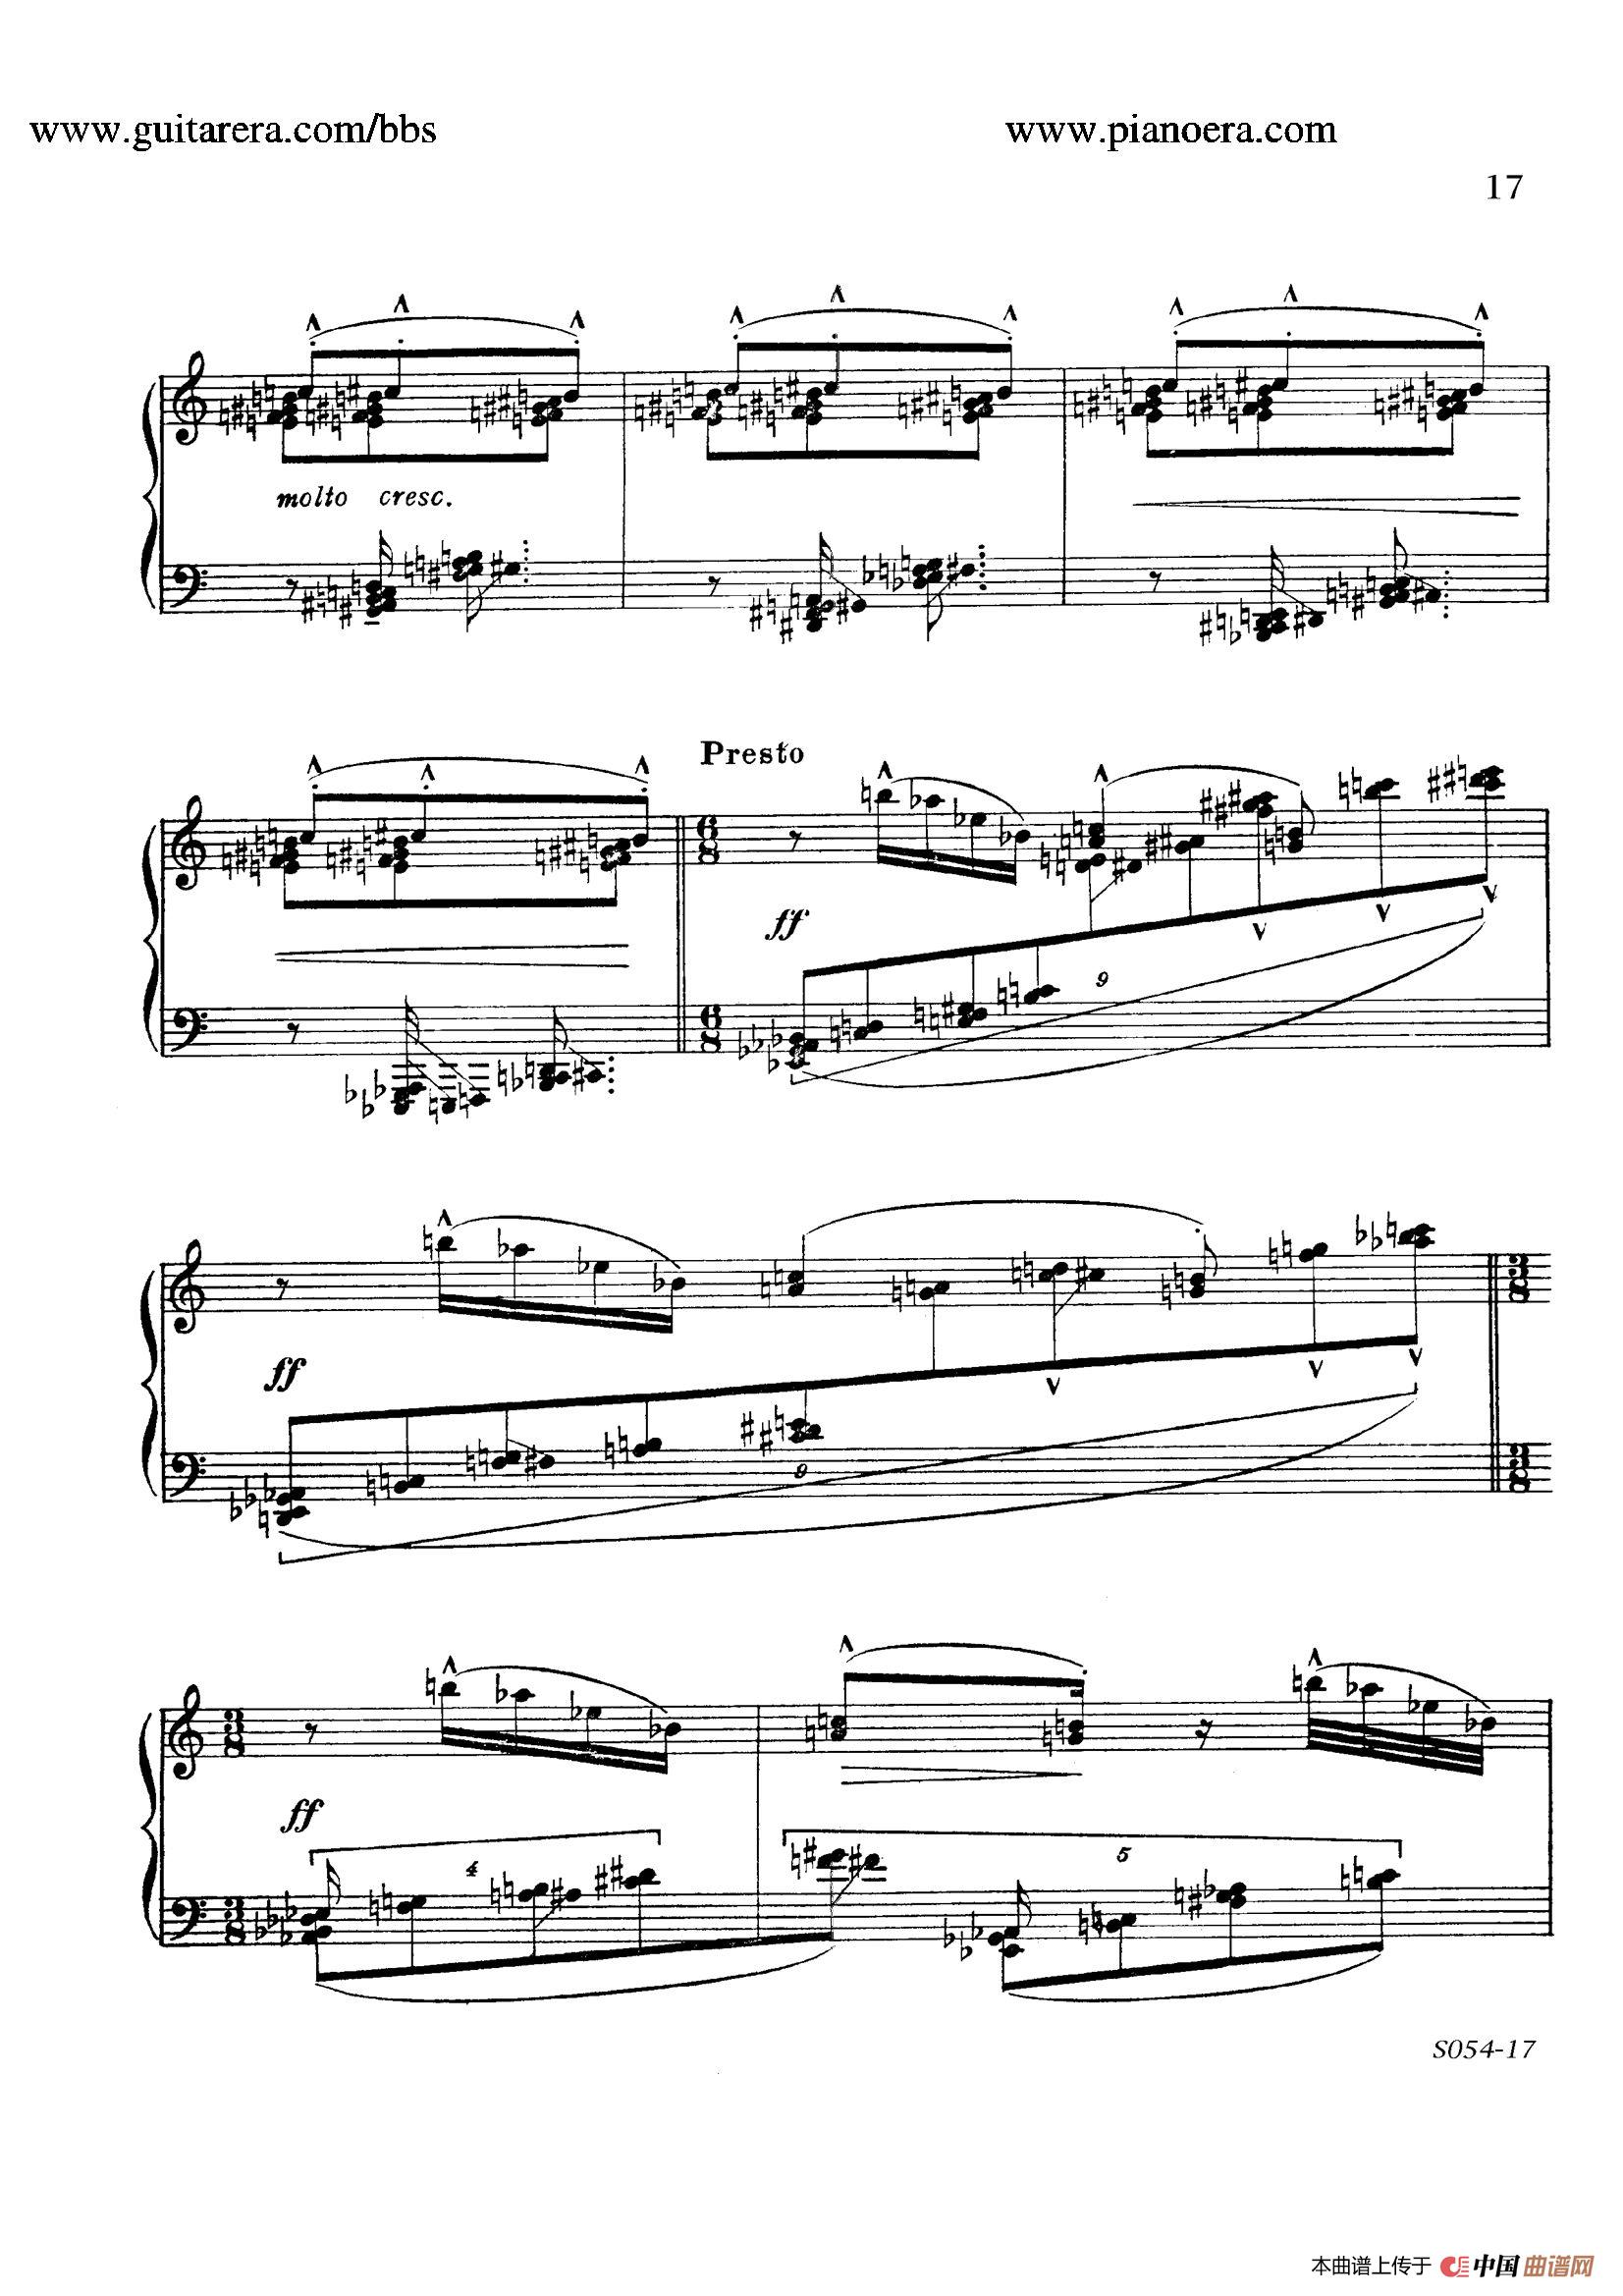 《Danse Sauvage Op.13 No.2》钢琴曲谱图分享